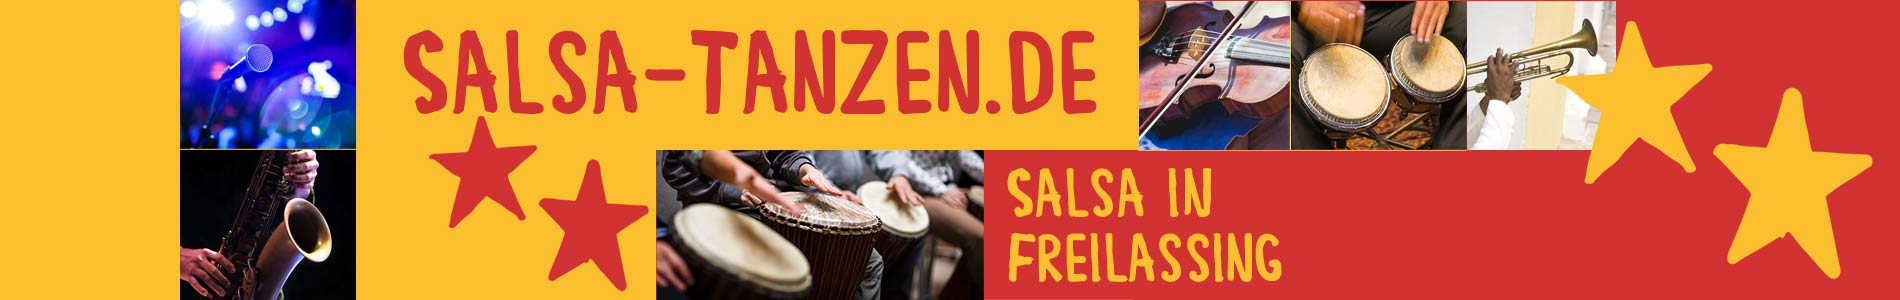 Salsa in Freilassing – Salsa lernen und tanzen, Tanzkurse, Partys, Veranstaltungen